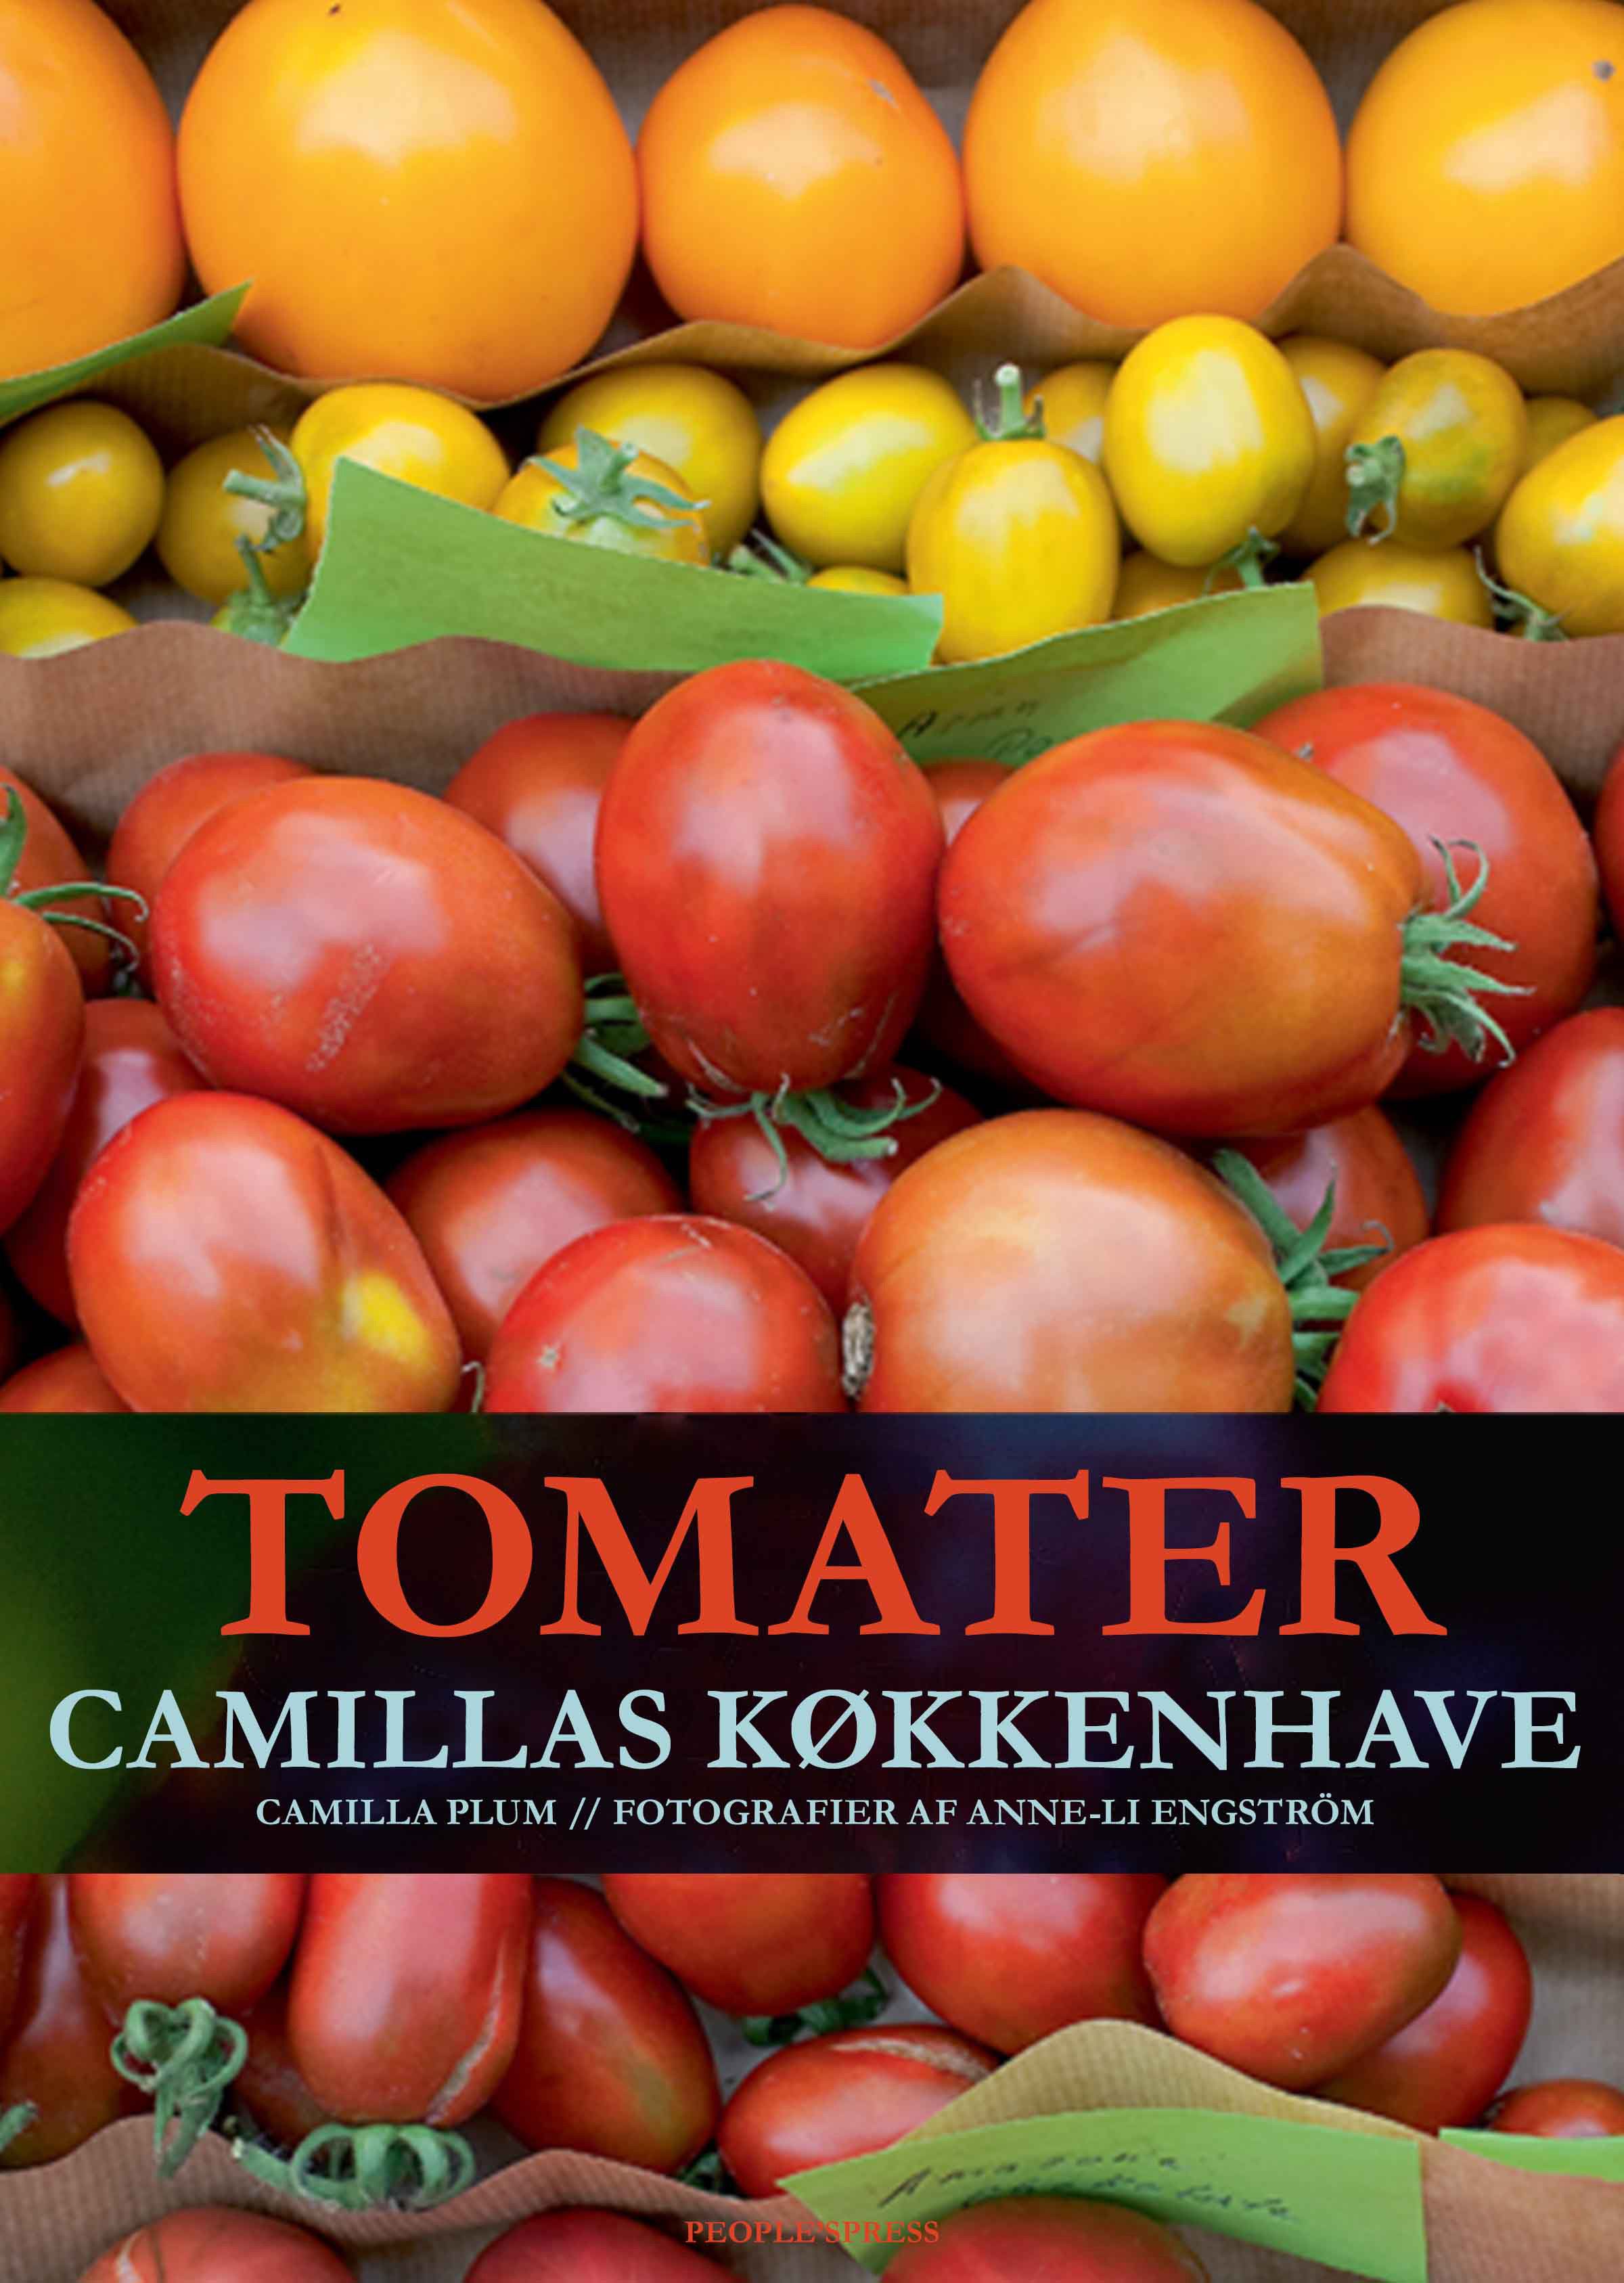 Tomater - Camillas køkkenhave, e-bok av Camilla Plum